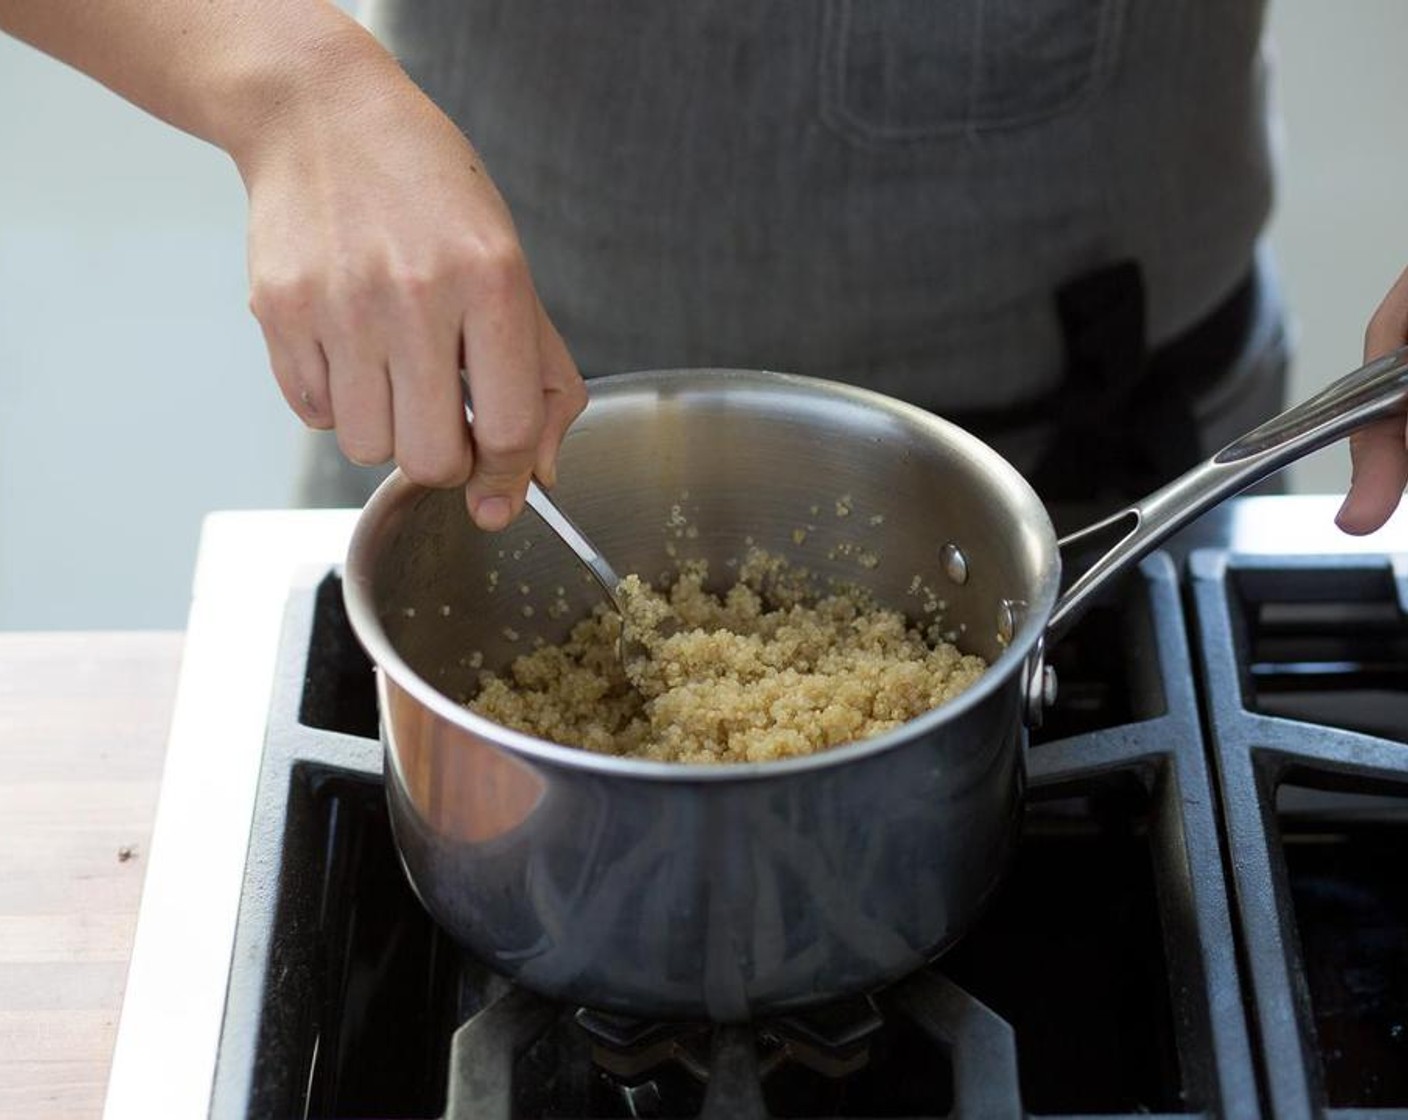 Schritt 1 In einem kleinen Topf Wasser (360 ml) bei mittlerer Hitze zum Kochen bringen. Quinoa (115 g) hinzufügen, Hitze reduzieren, abdecken und etwa 20 Minuten köcheln lassen. Vom Herd nehmen, mit einer Gabel auflockern und bis zum Anrichten warm halten.